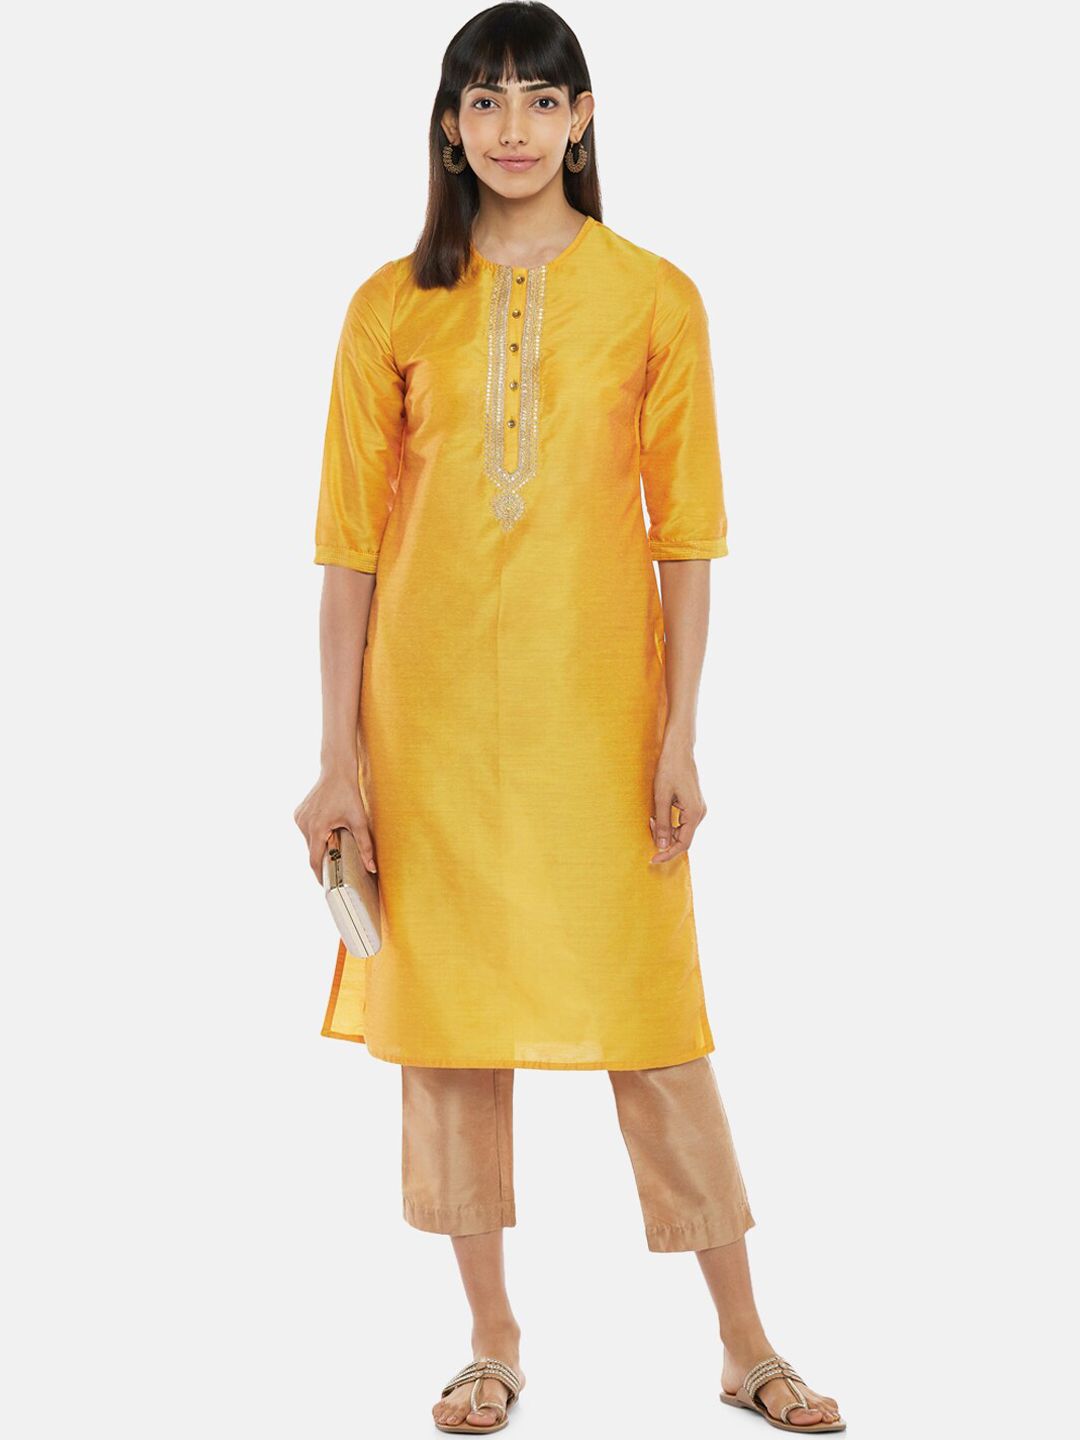 RANGMANCH BY PANTALOONS Women Mustard Yellow Yoke Design Kurta Price in India